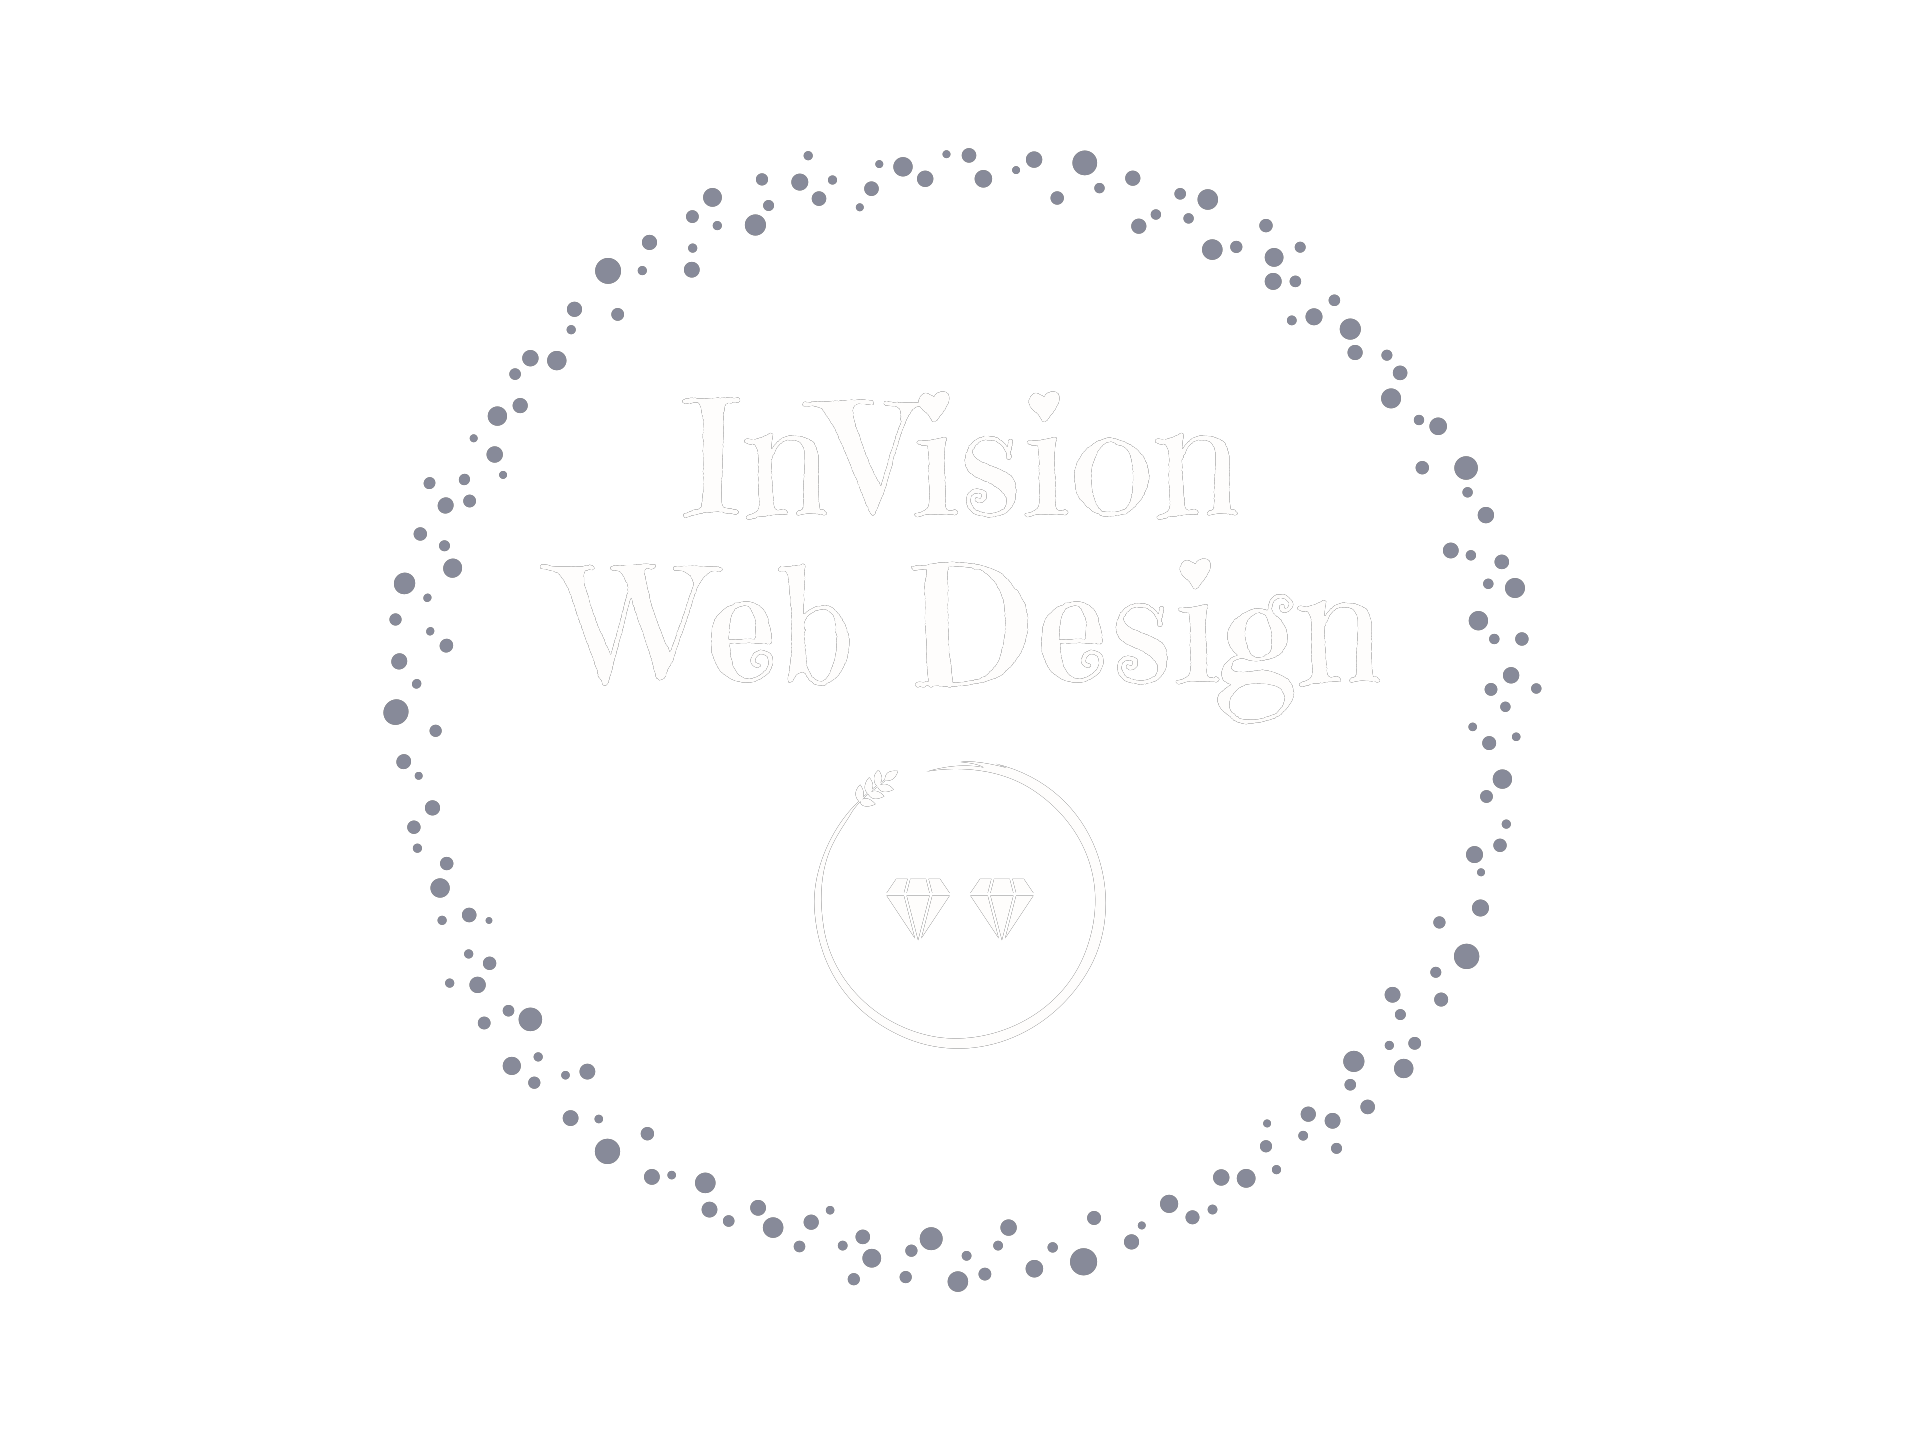 Invision Web Design